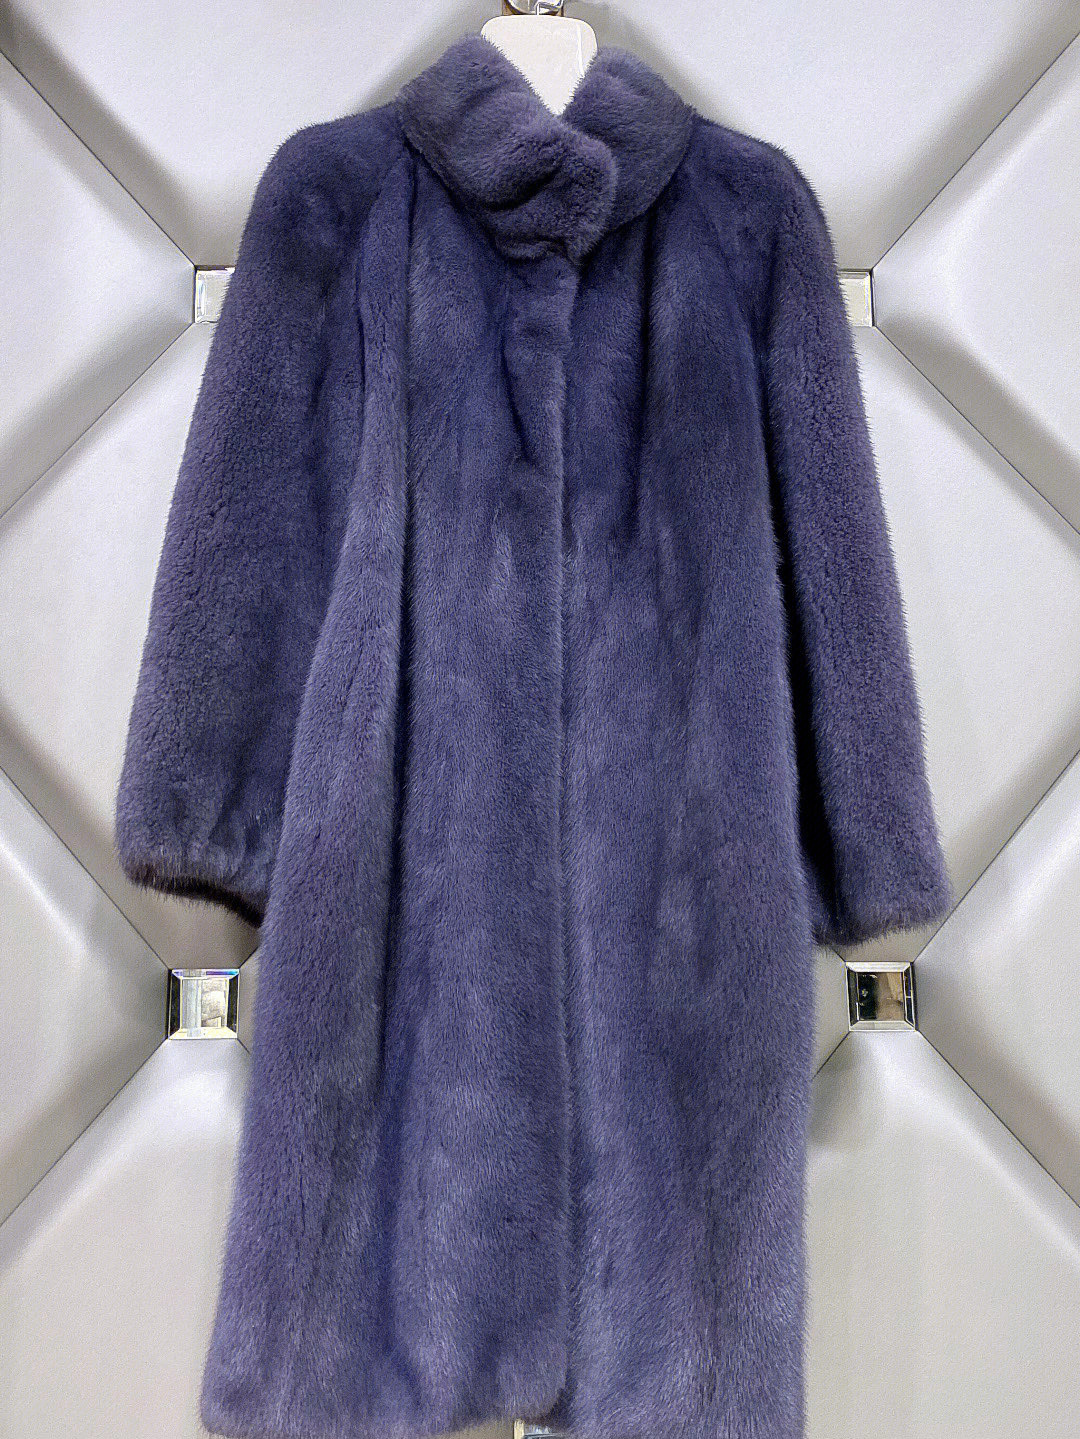 紫貂大衣为什么名贵图片